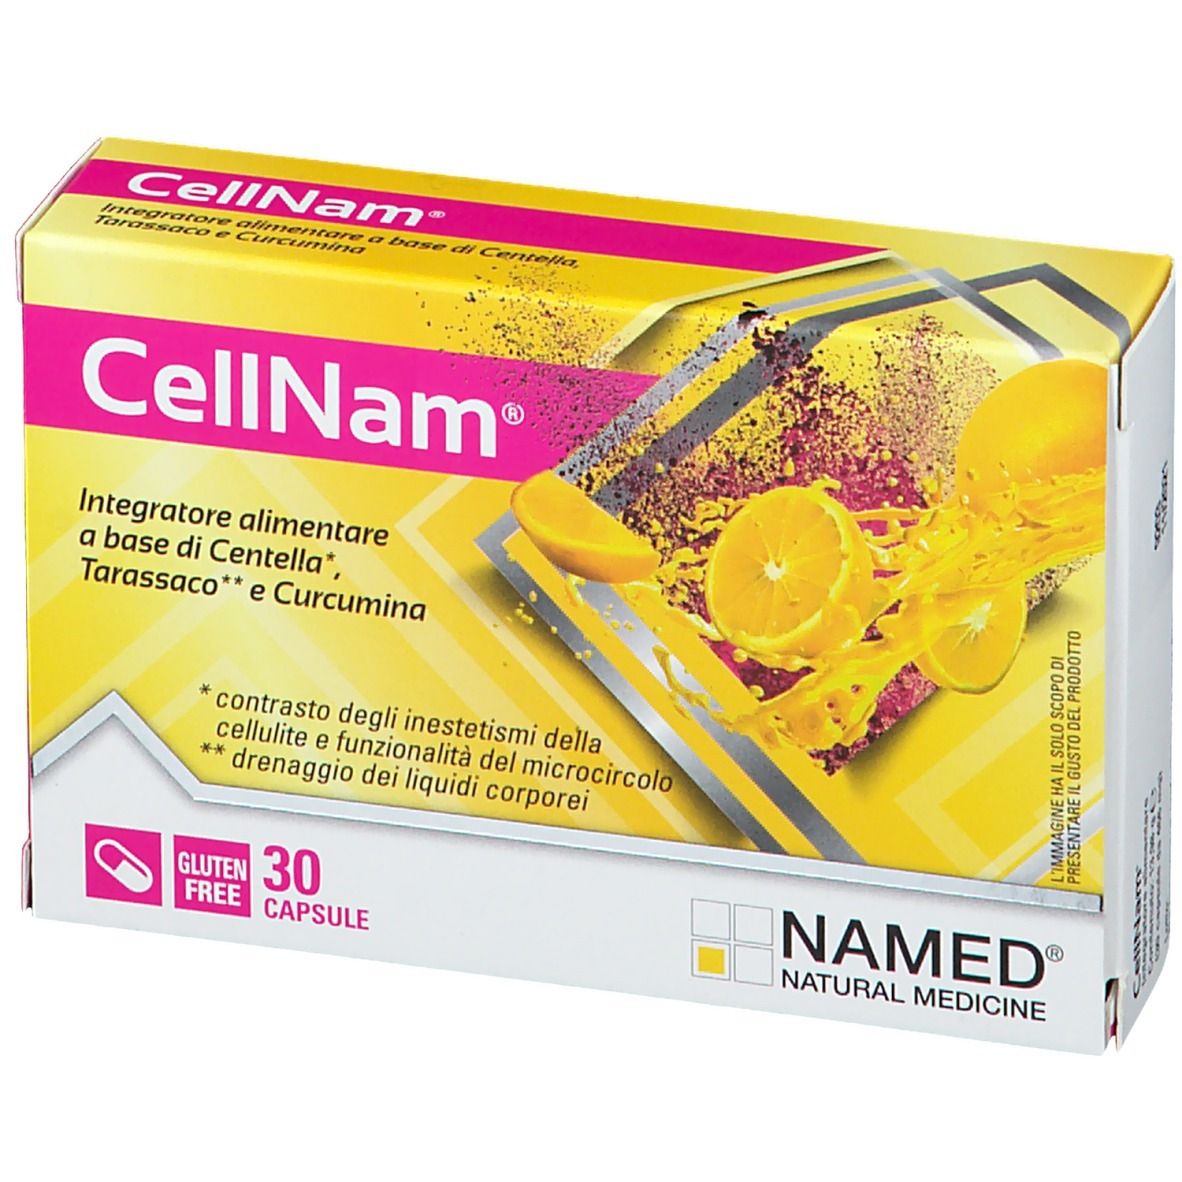 NAMED CellNam®